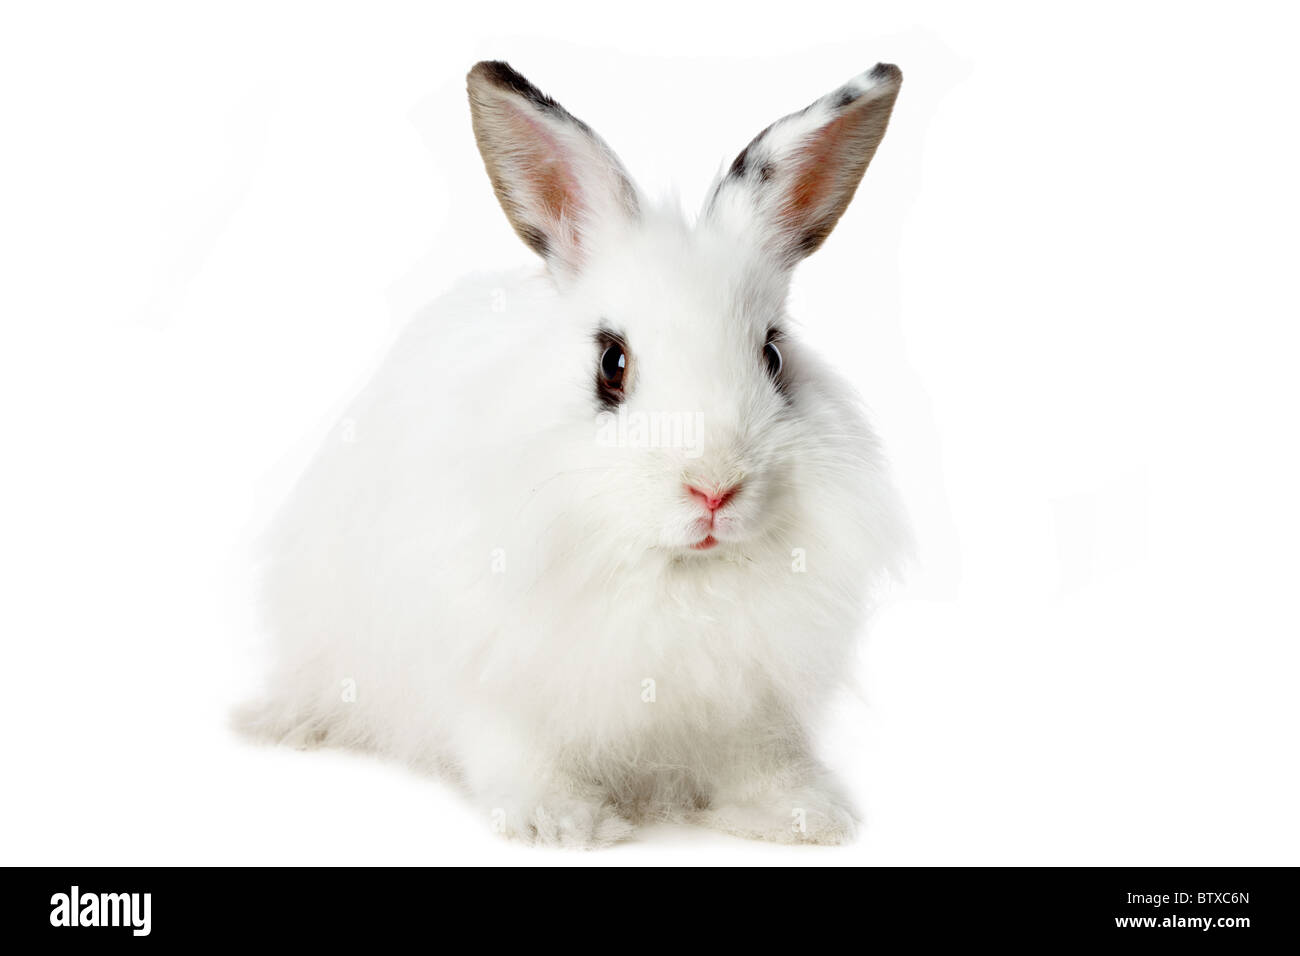 Image de fluffy lapin blanc isolé sur fond blanc Banque D'Images